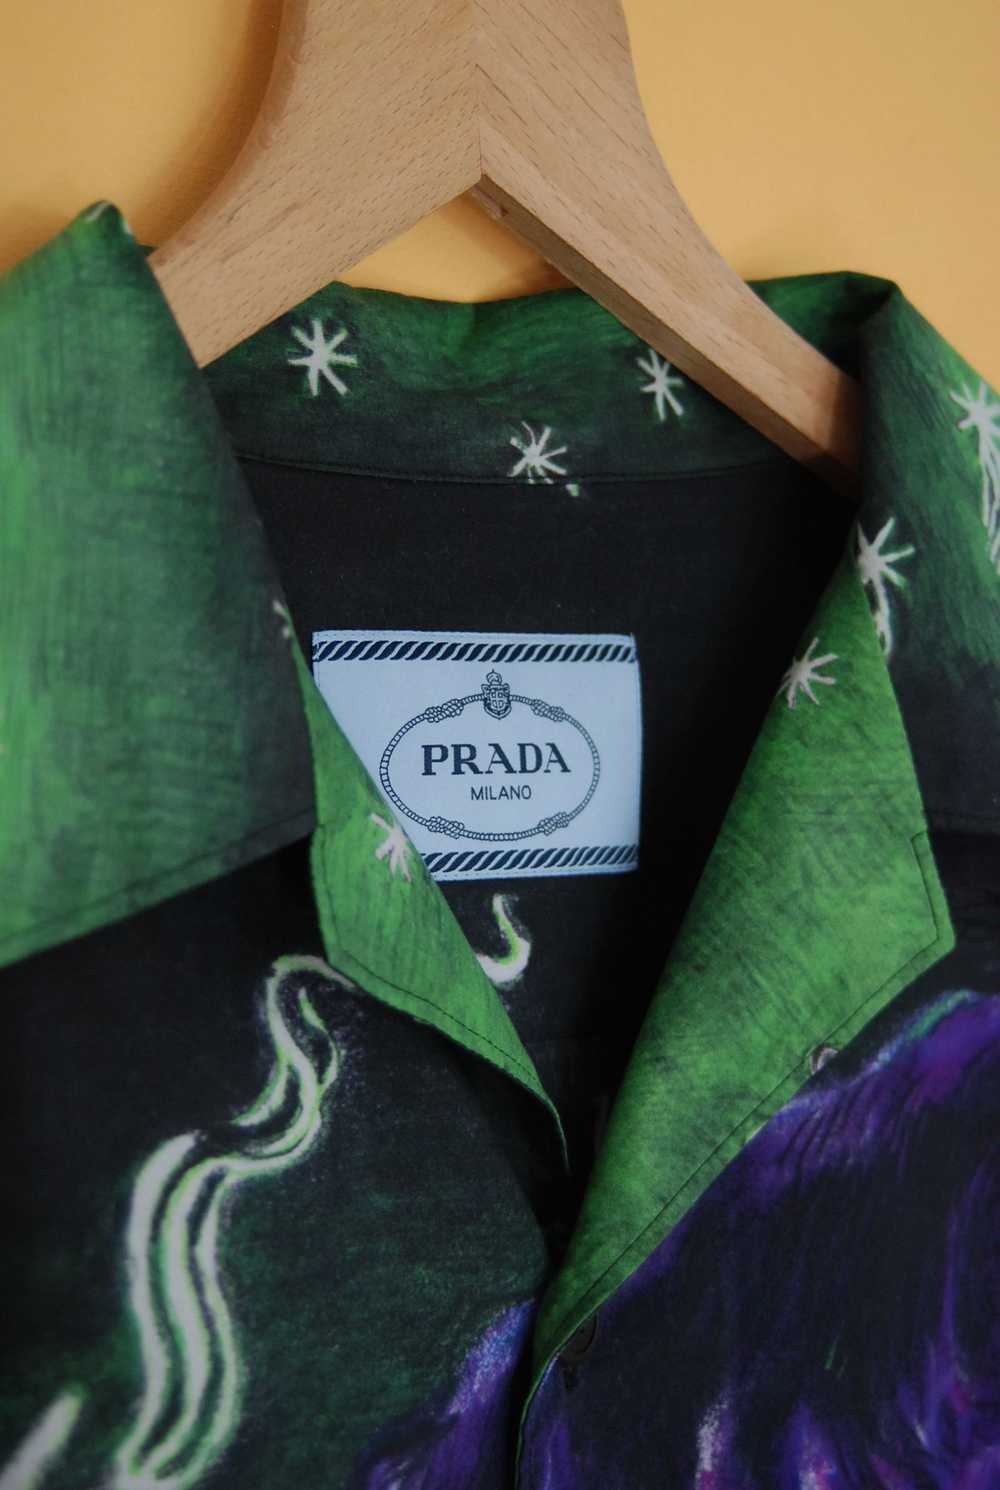 Prada Last drop! Prada Impossible True Love shirt - image 2